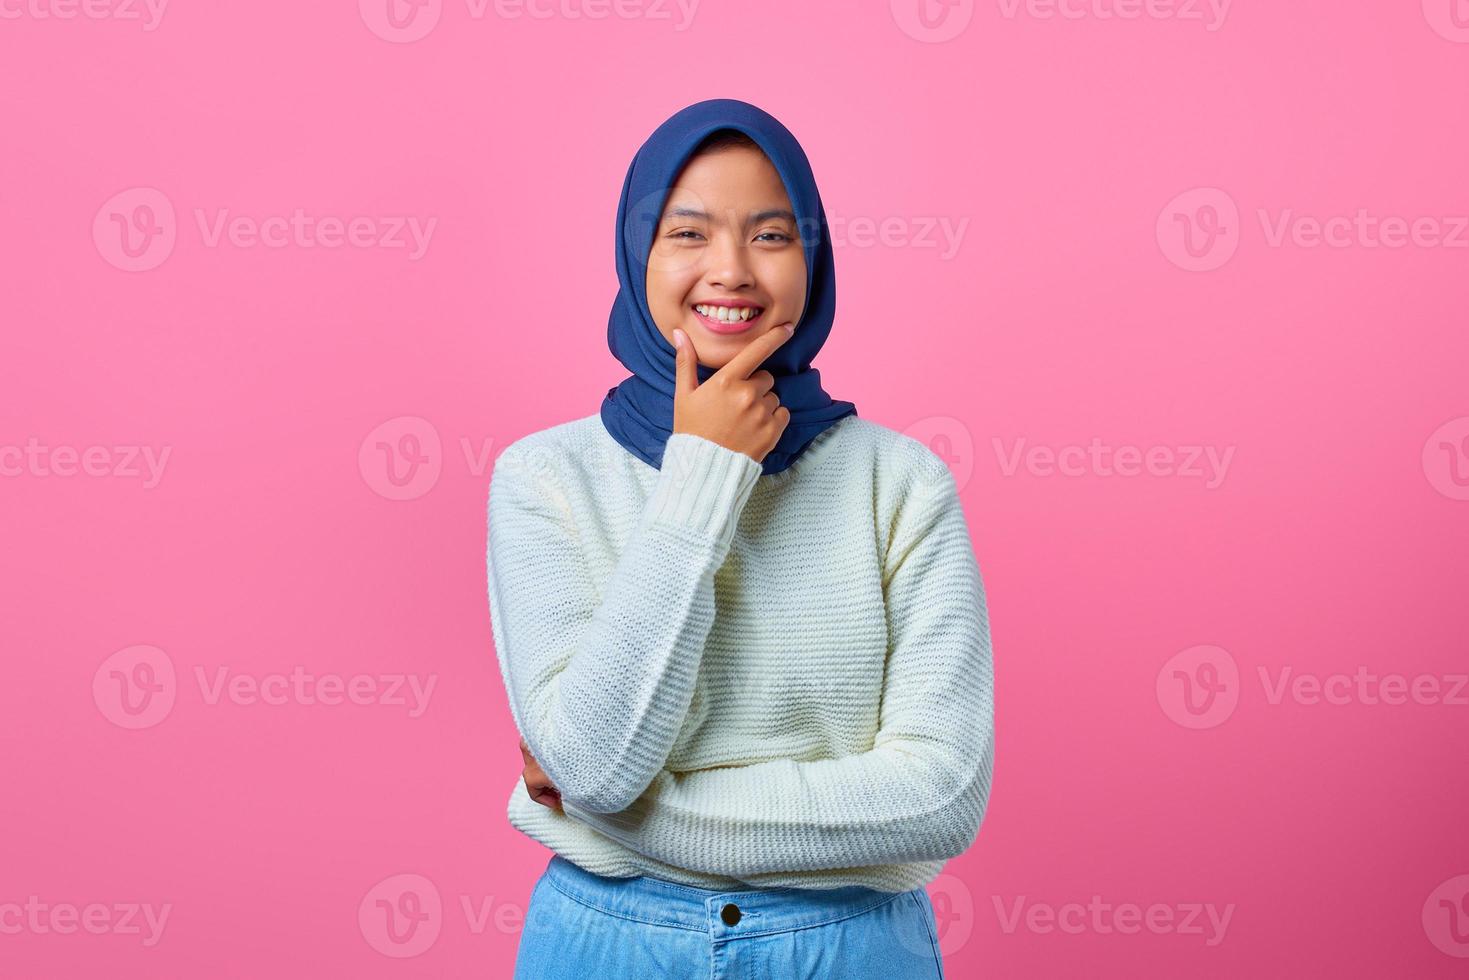 ritratto di giovane donna asiatica sorridente che tocca il mento con la mano su sfondo rosa foto